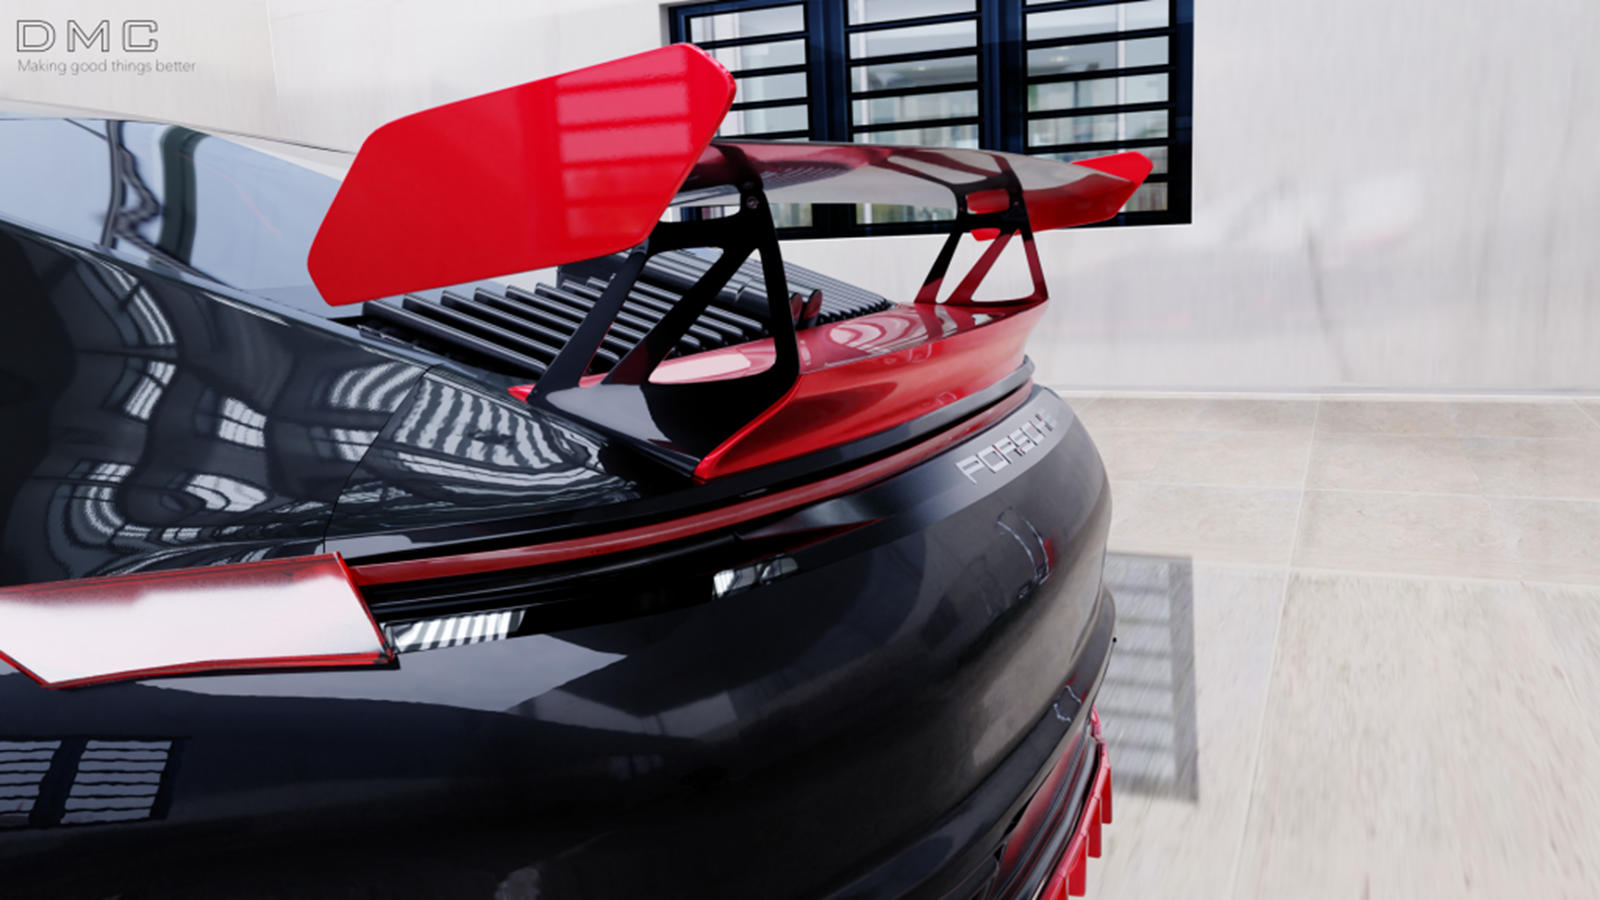 Пока мы ожидаем появления нового Porsche 911 Turbo, немецкий тюнер DMC не теряет времени на модификацию 2020 Porsche 911 Carrera 992. Показанный в серии рендеров, новый пакет DMC Emozione GT в стиле ретро придает Porsche 992-го поколения спортивный о